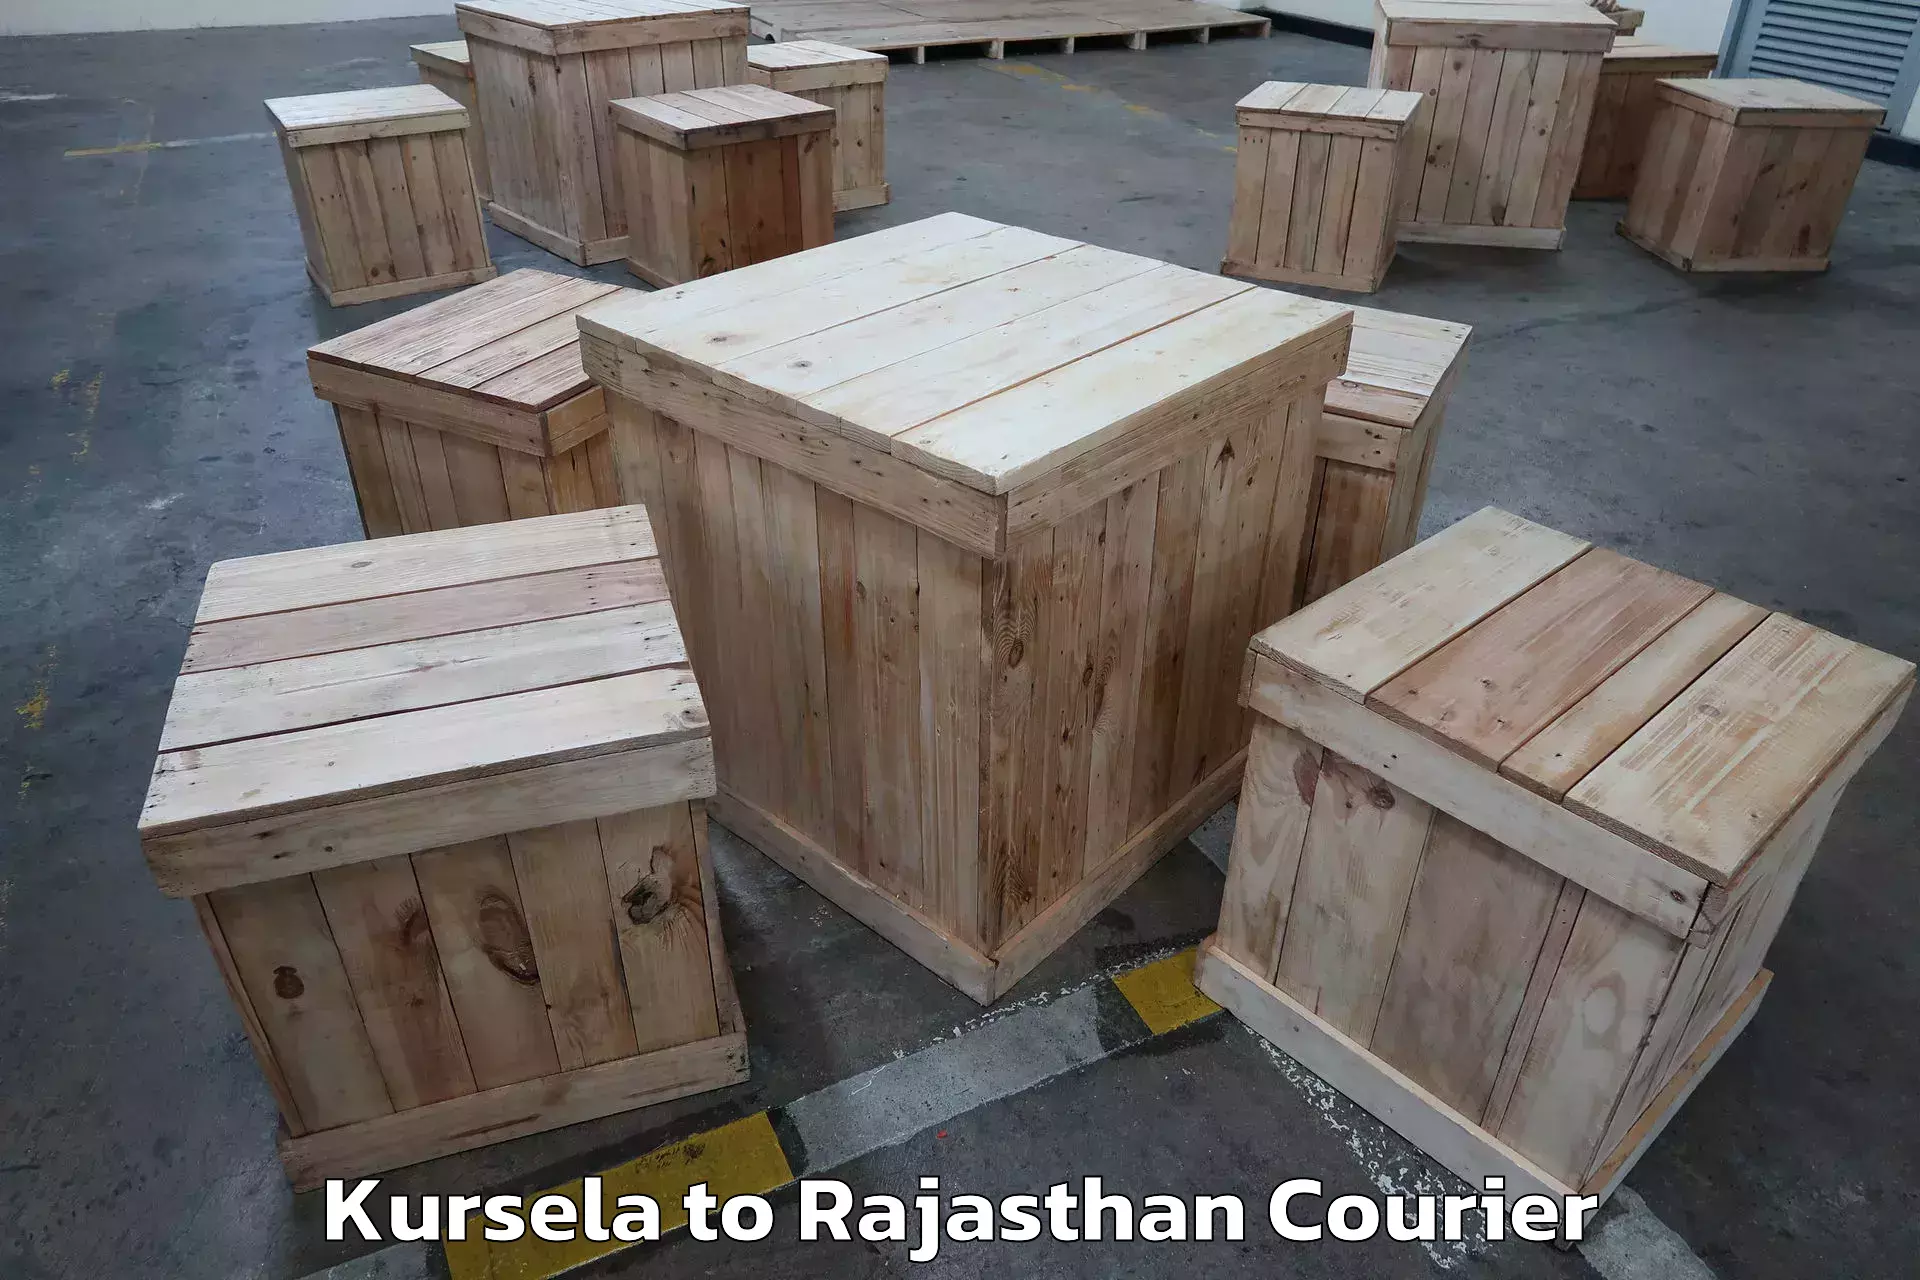 Furniture transport and storage in Kursela to Mandalgarh